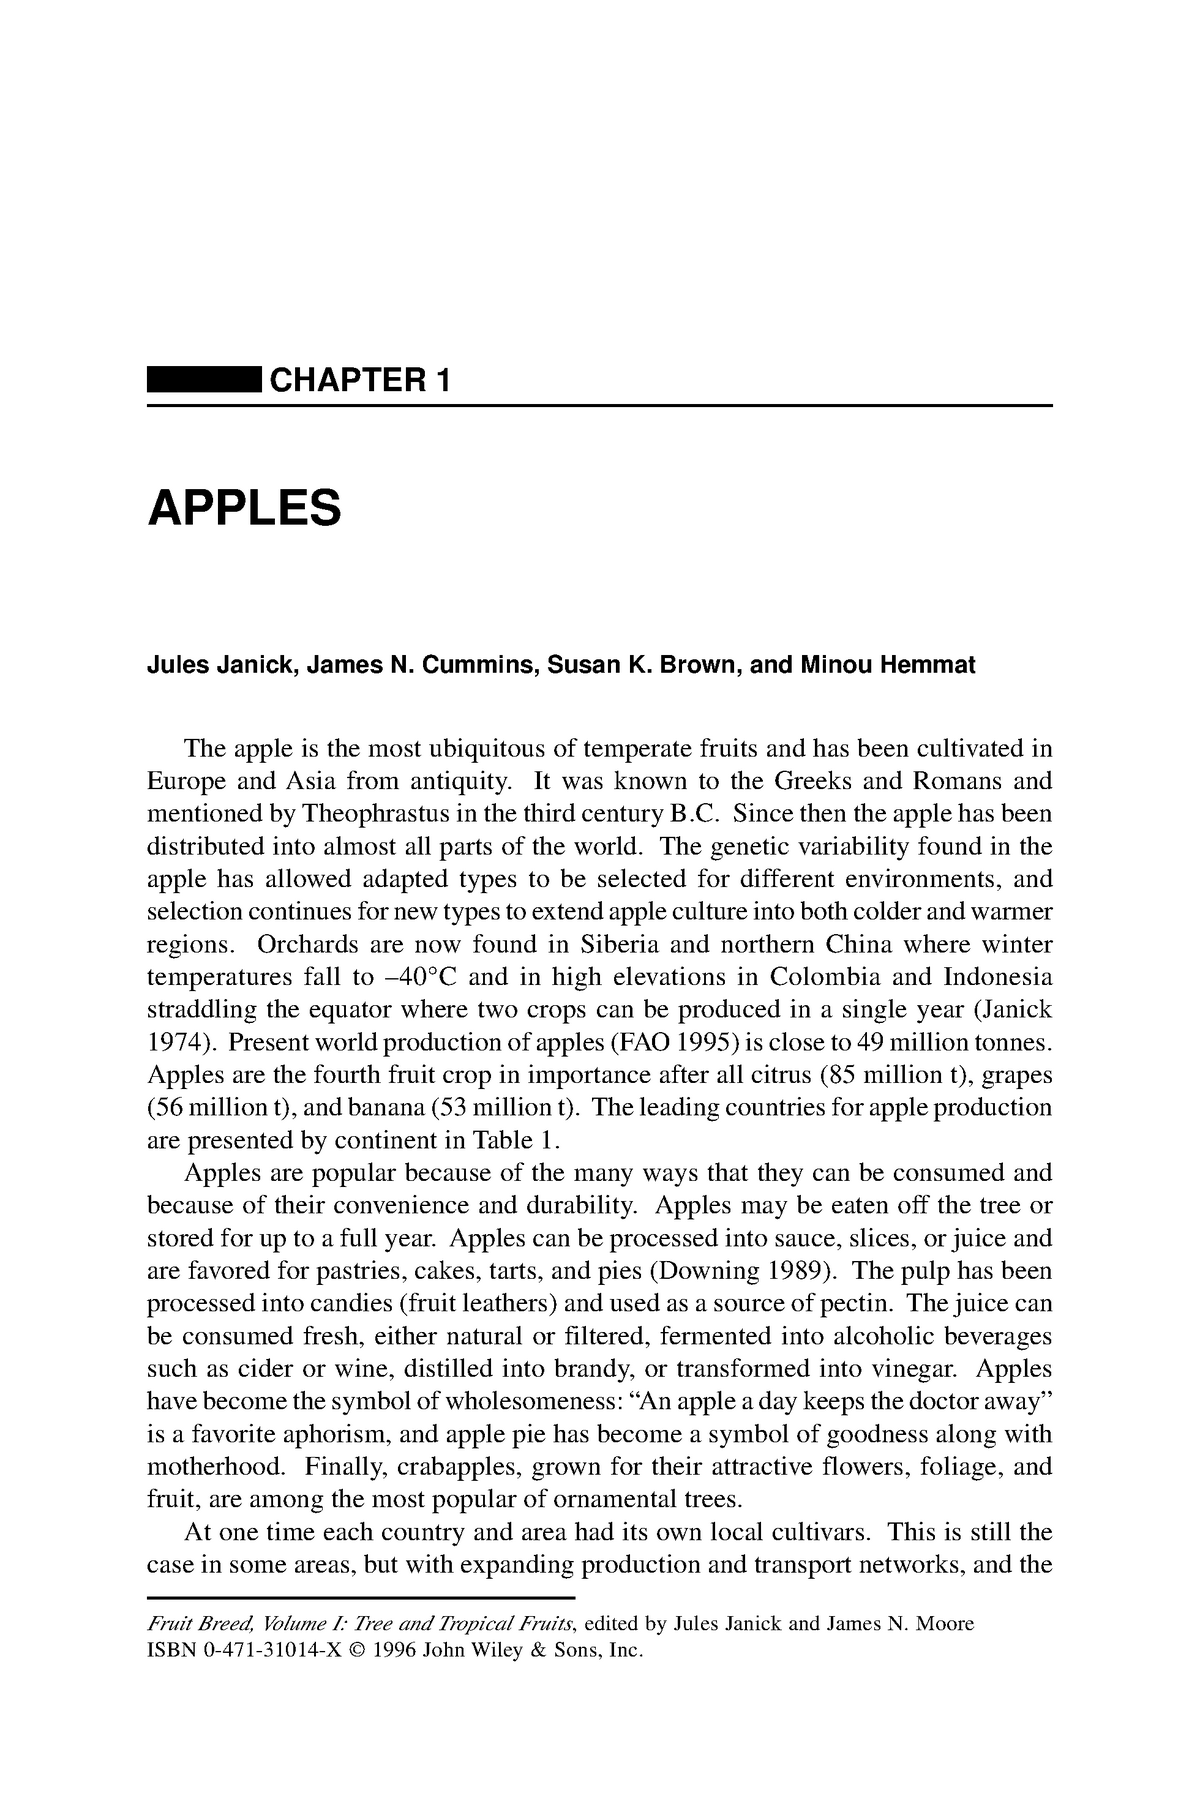 Cortland Apple on G.11 - Cummins Nursery - Fruit Trees, Scions